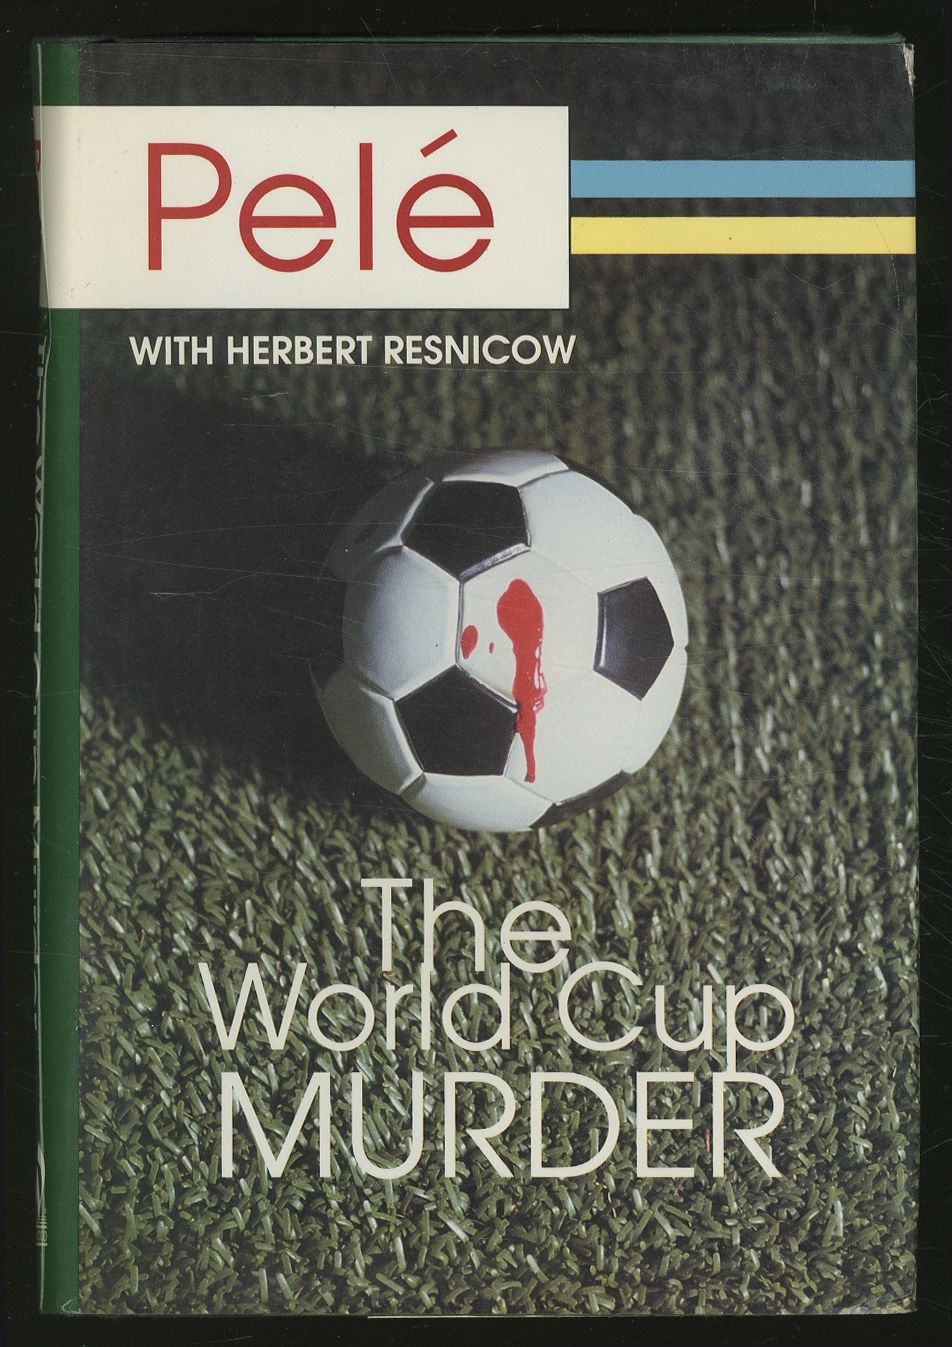 World Cup Murder